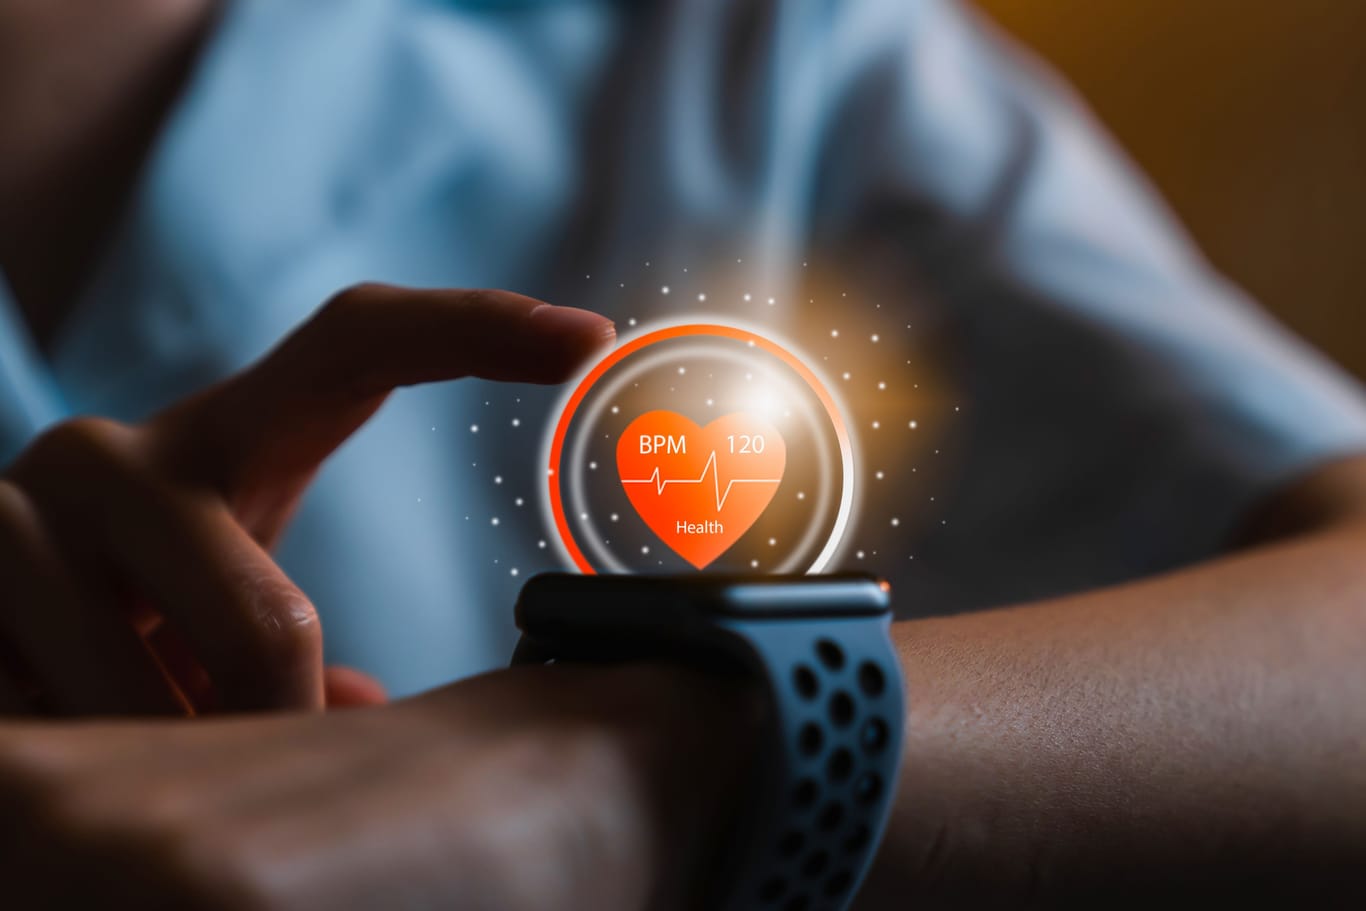 Mehr als eine Uhr: Smartwatches zeigen nicht nur die Zeit an, sondern liefern Ihnen auch spannende Informationen über Ihre Gesundheit. Heute gibt es einige Modelle im Sale bei Amazon. (Symbolbild)